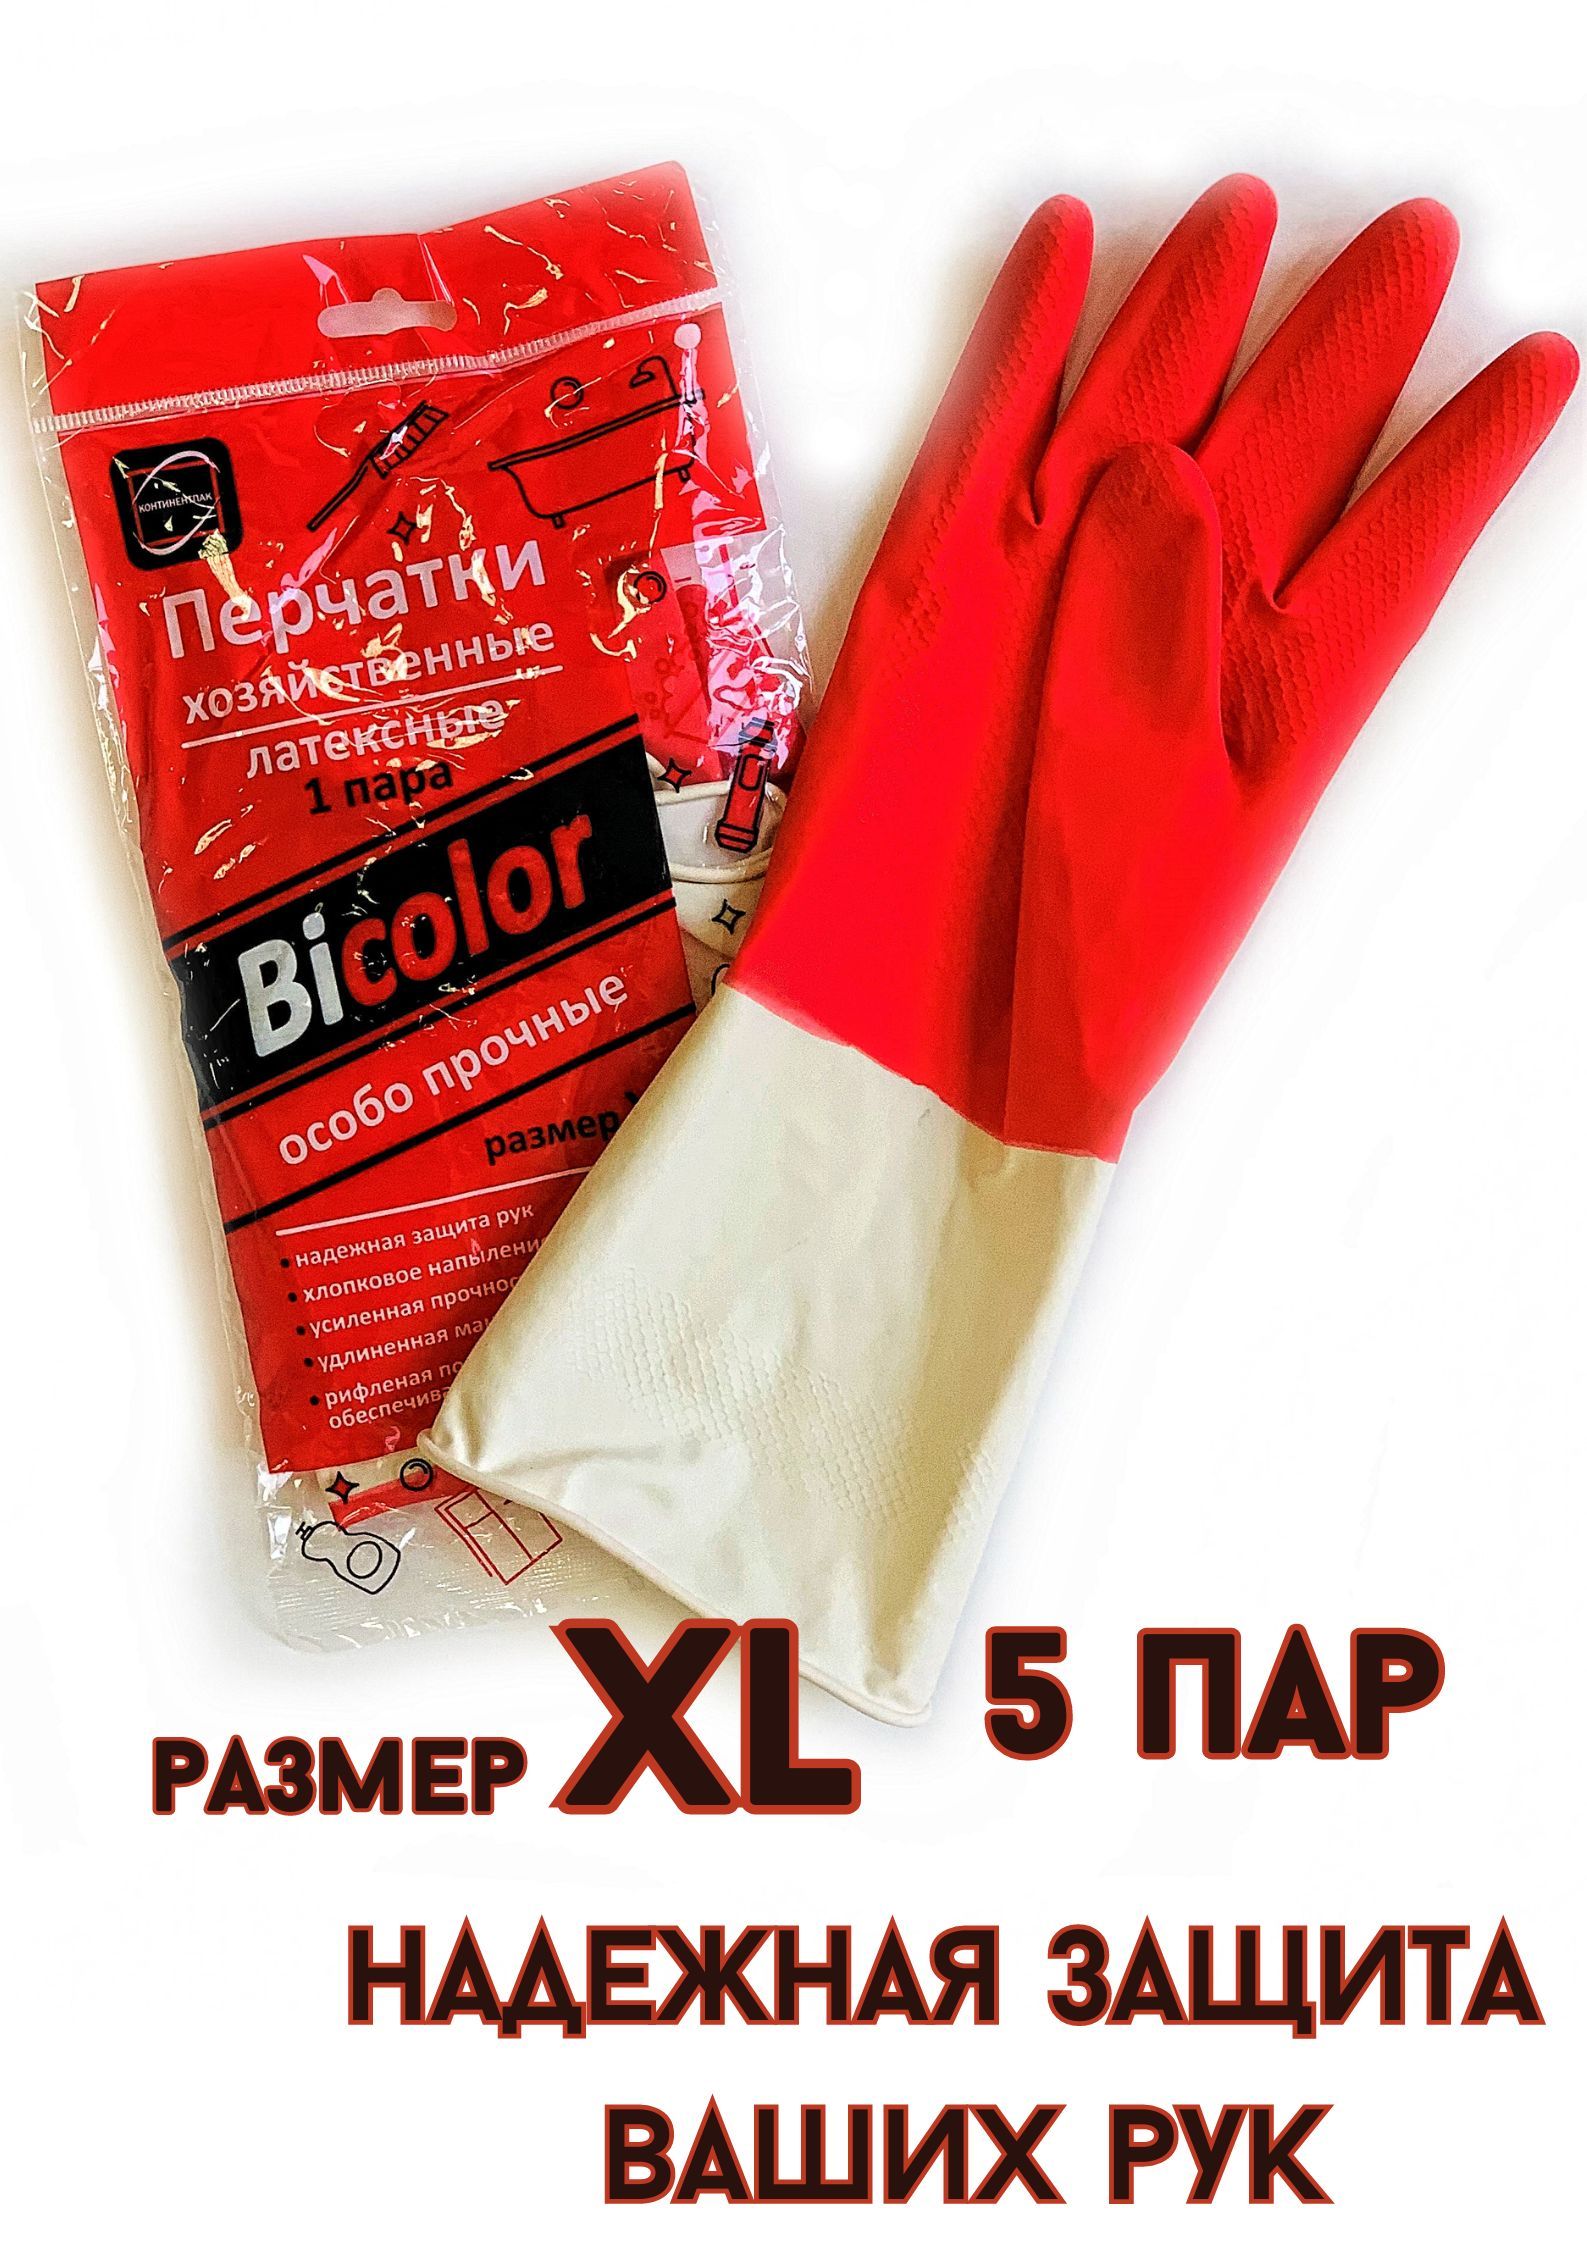 Перчатки БытСервис хозяйственные резиновые XL особо прочные красно-белые 5 пар